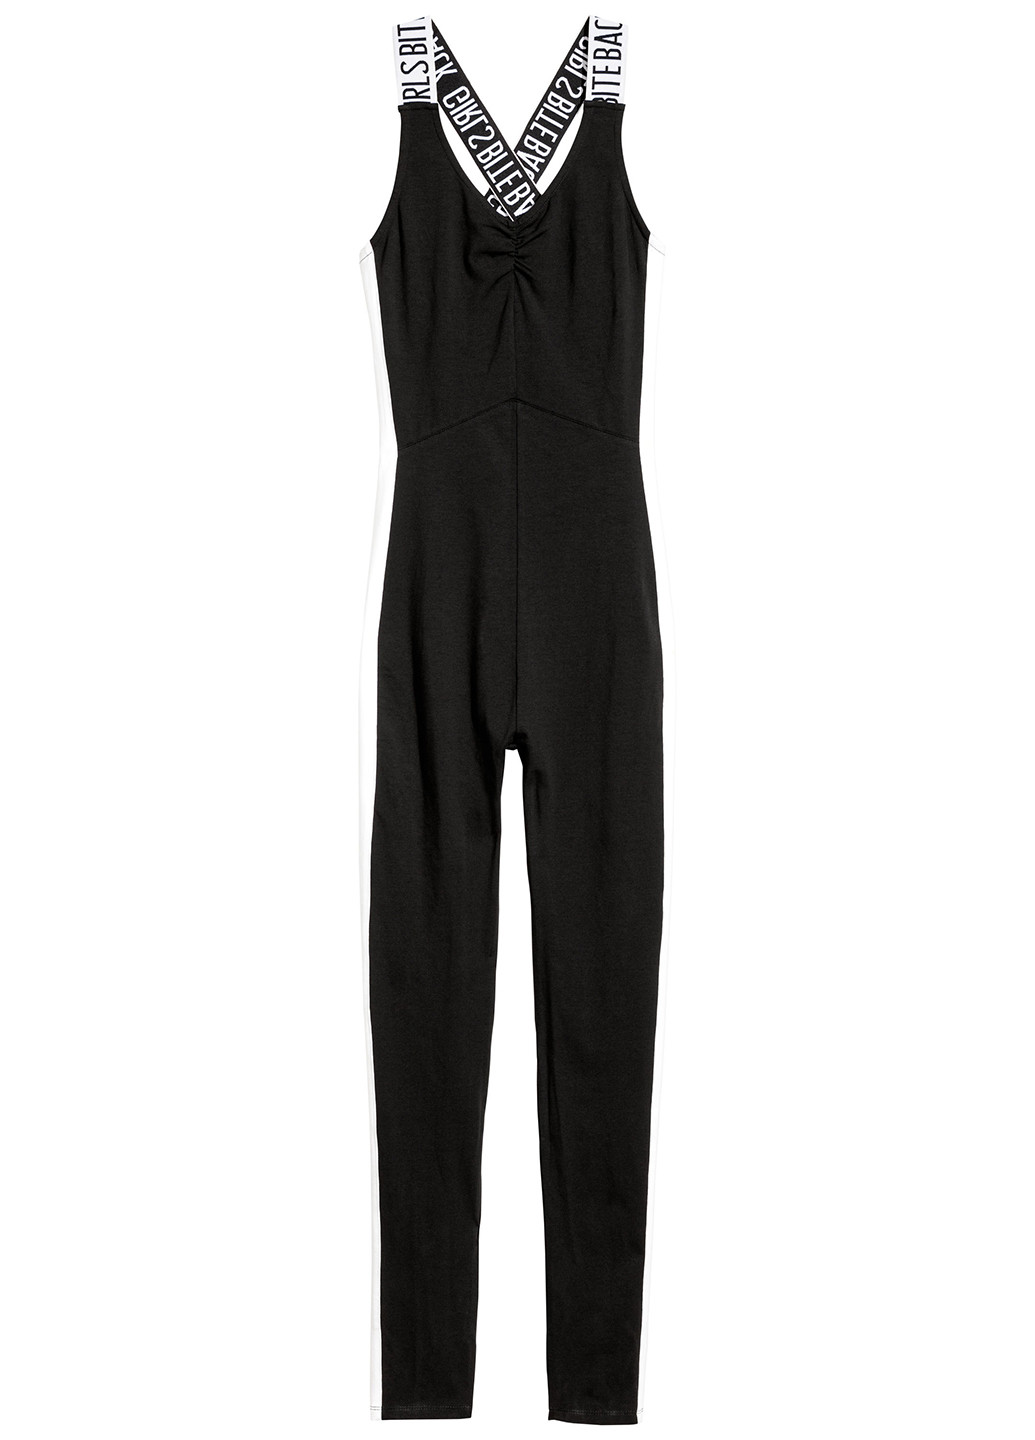 Комбинезон H&M комбинезон-брюки надпись чёрный спортивный